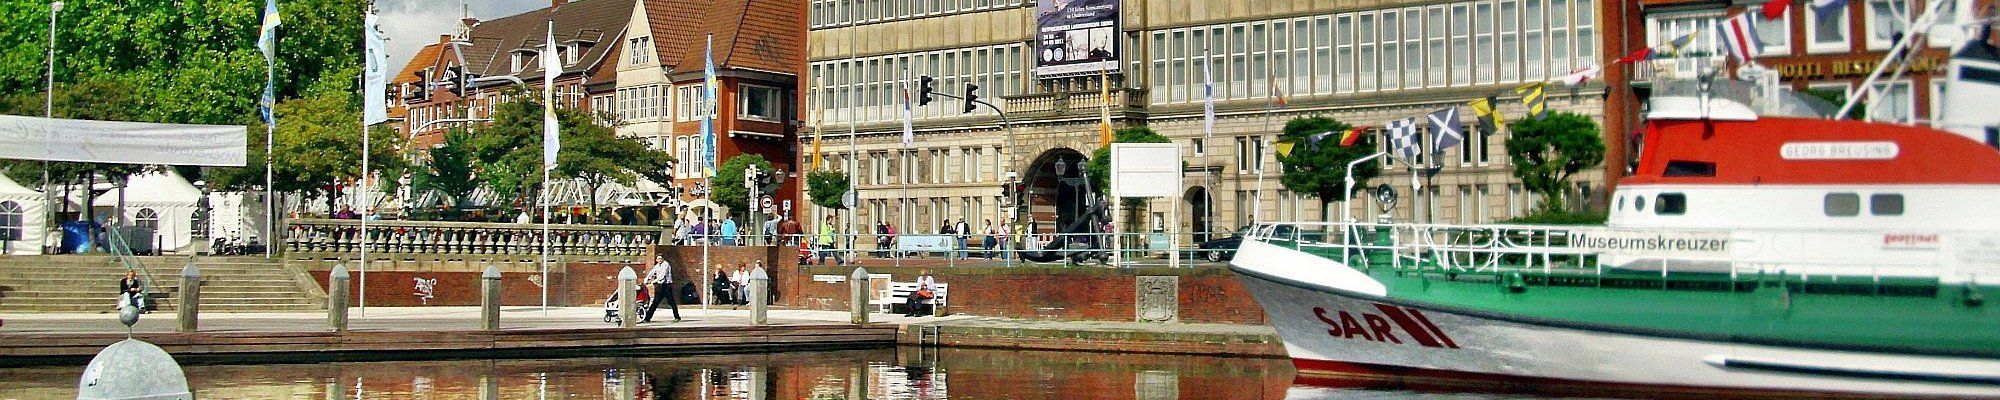 Stadthafen und Rathaus in Emden © R.P. auf Pixabay